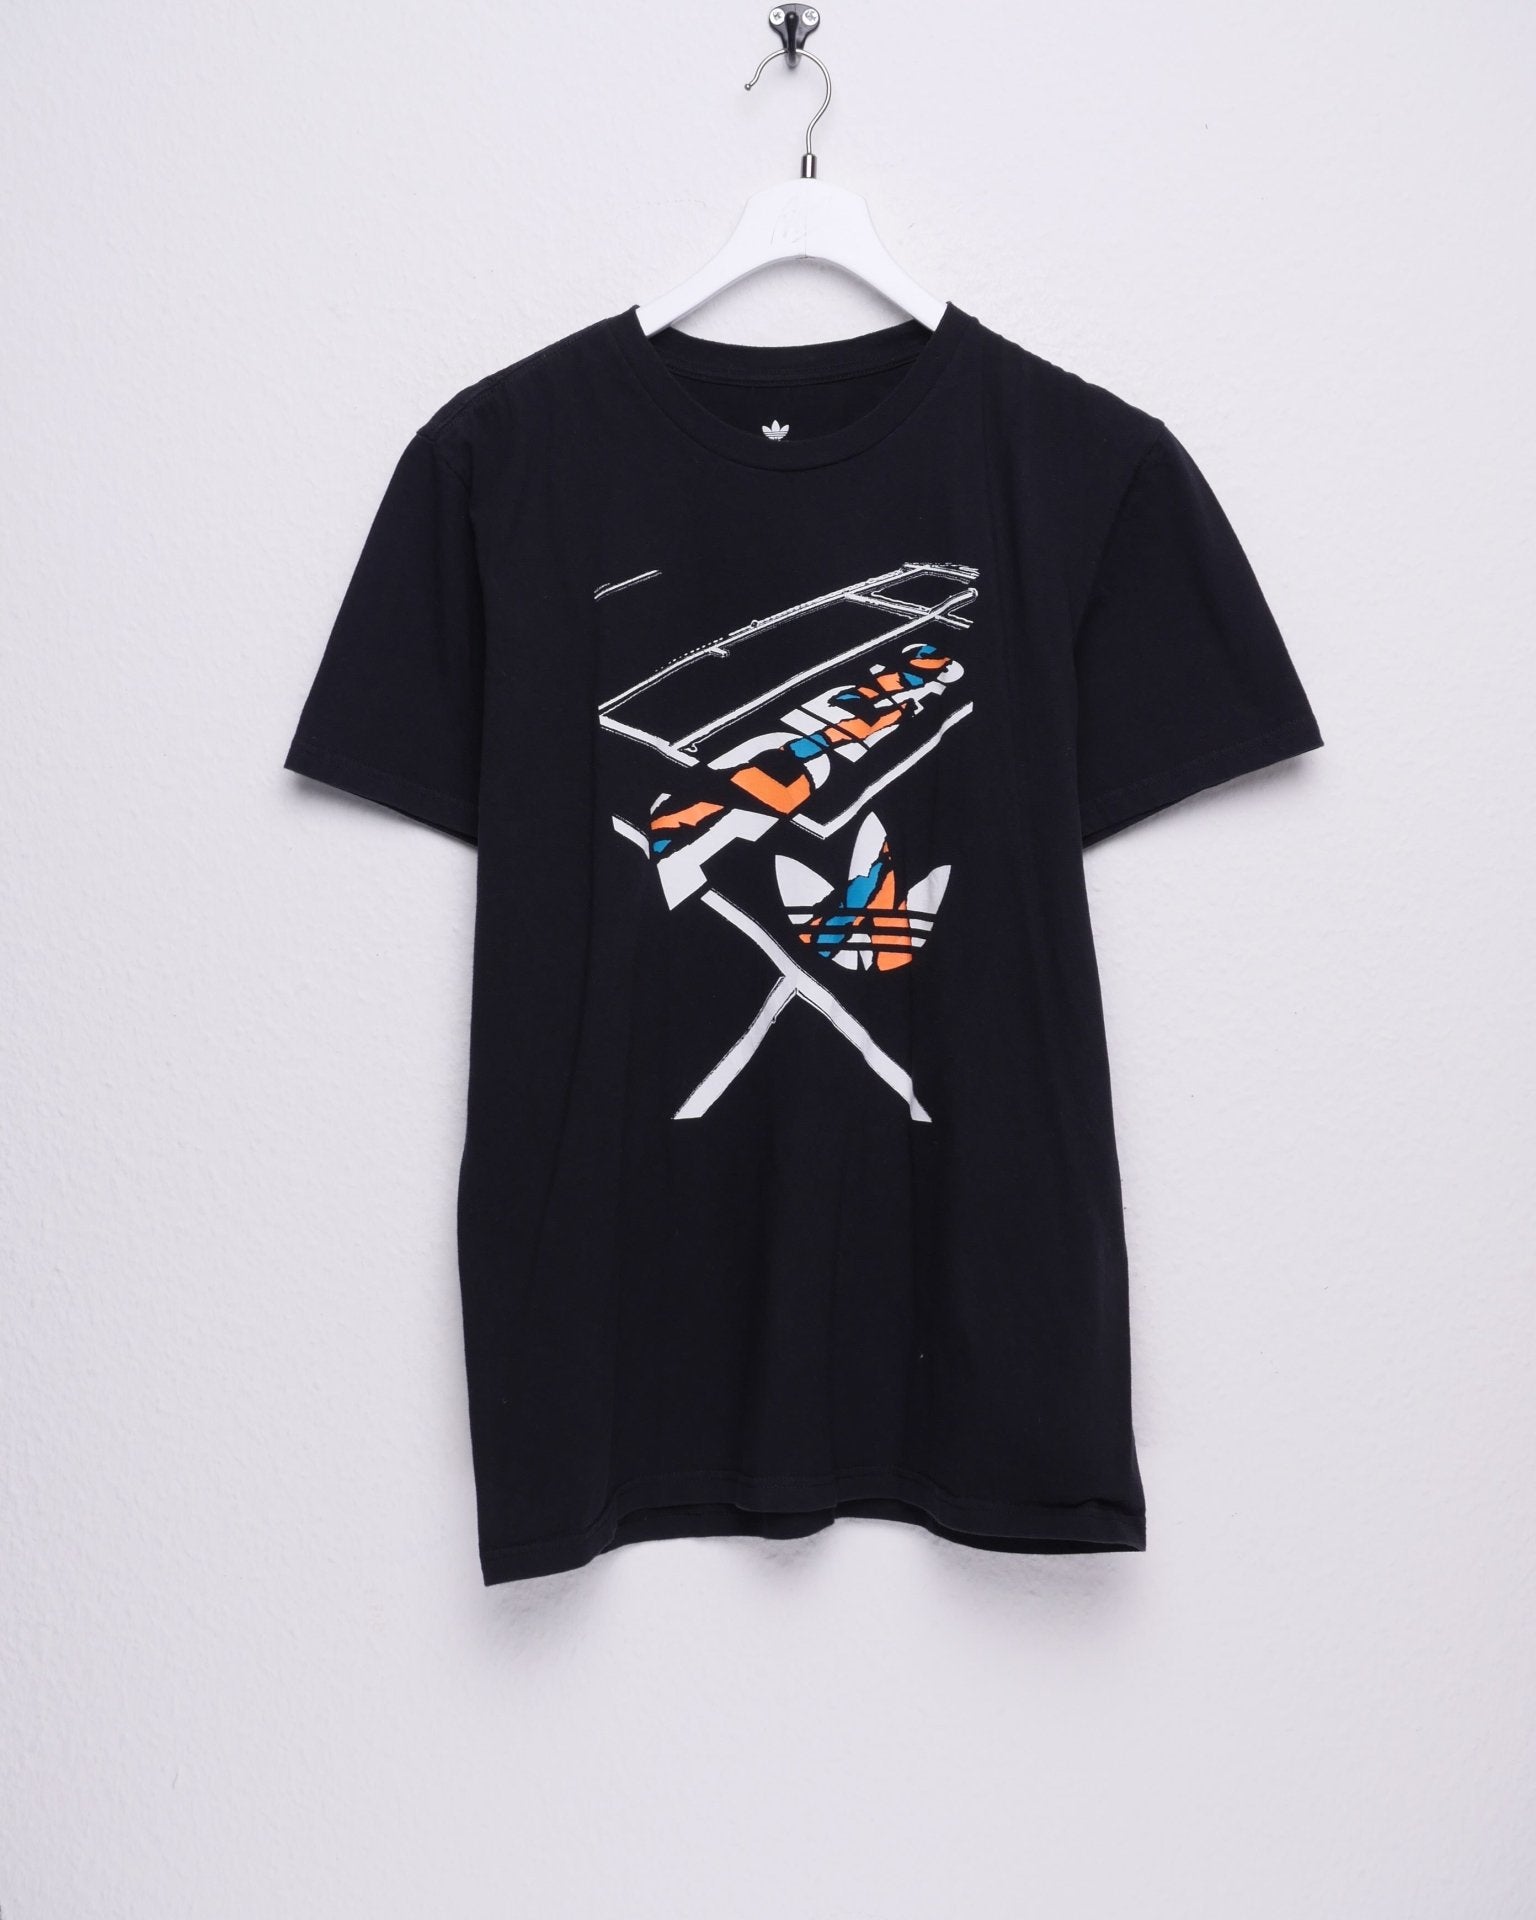 Adidas printed abstract Logo black Shirt - Peeces